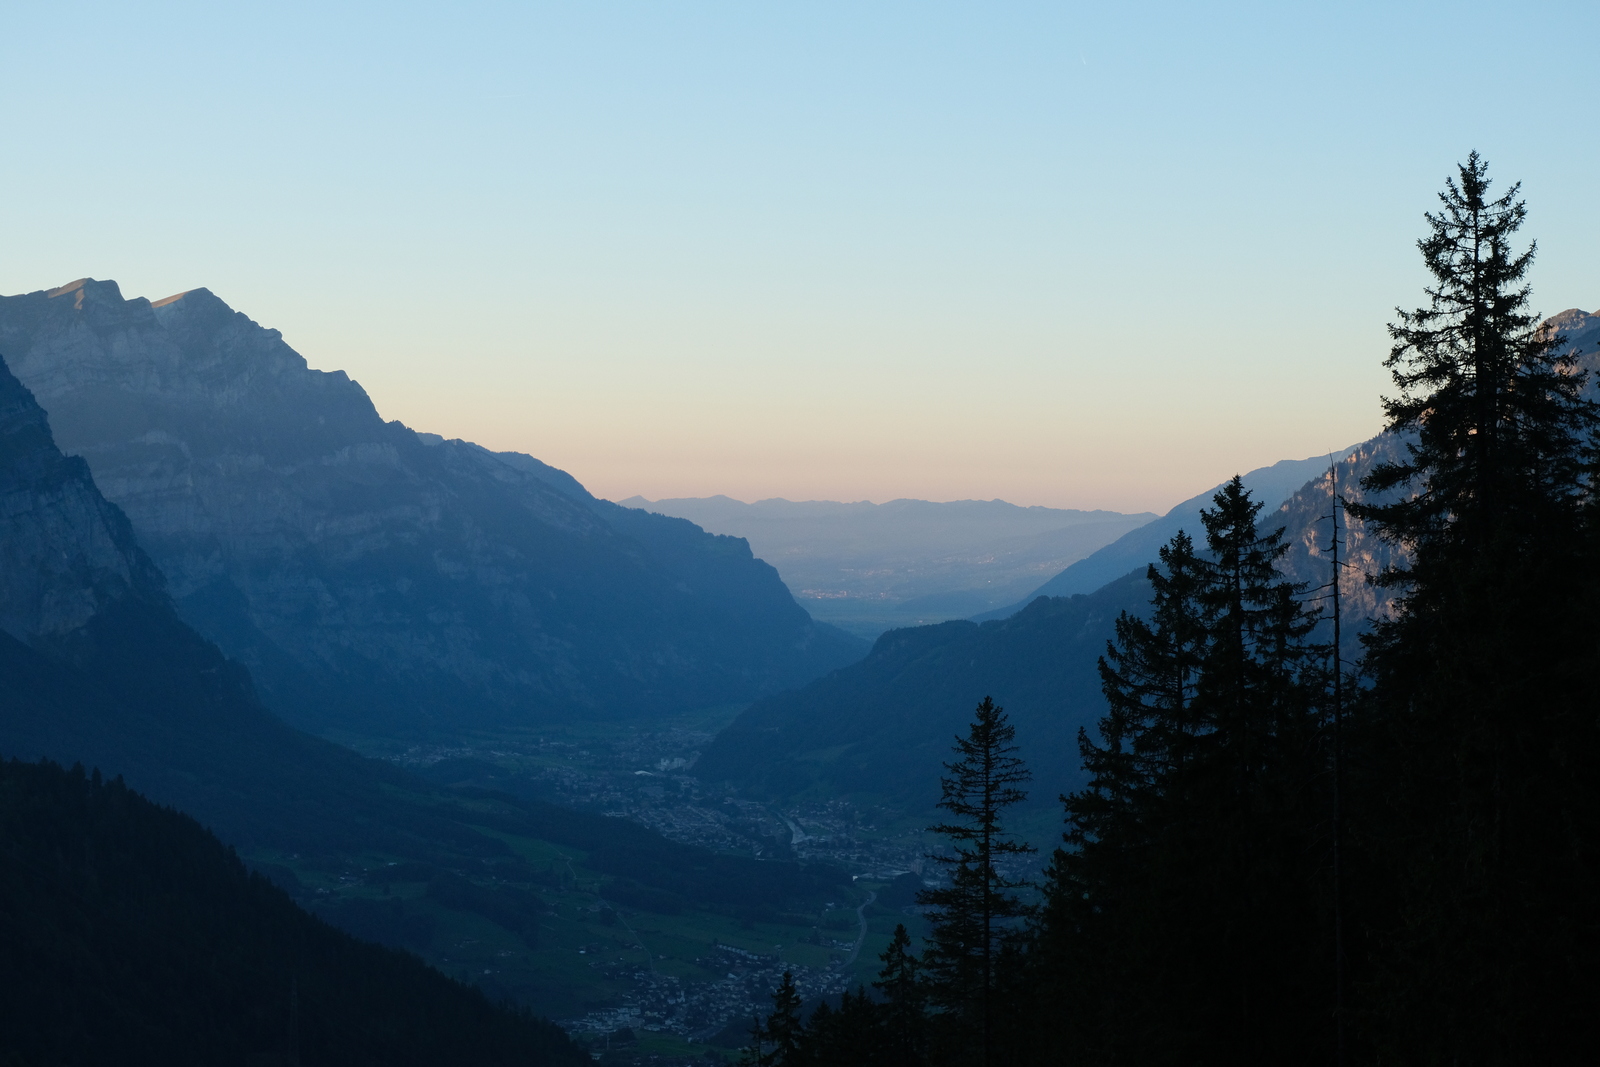  "2021-09-24 'Glarus Valley Sunset 2' - 1600W.jpg"